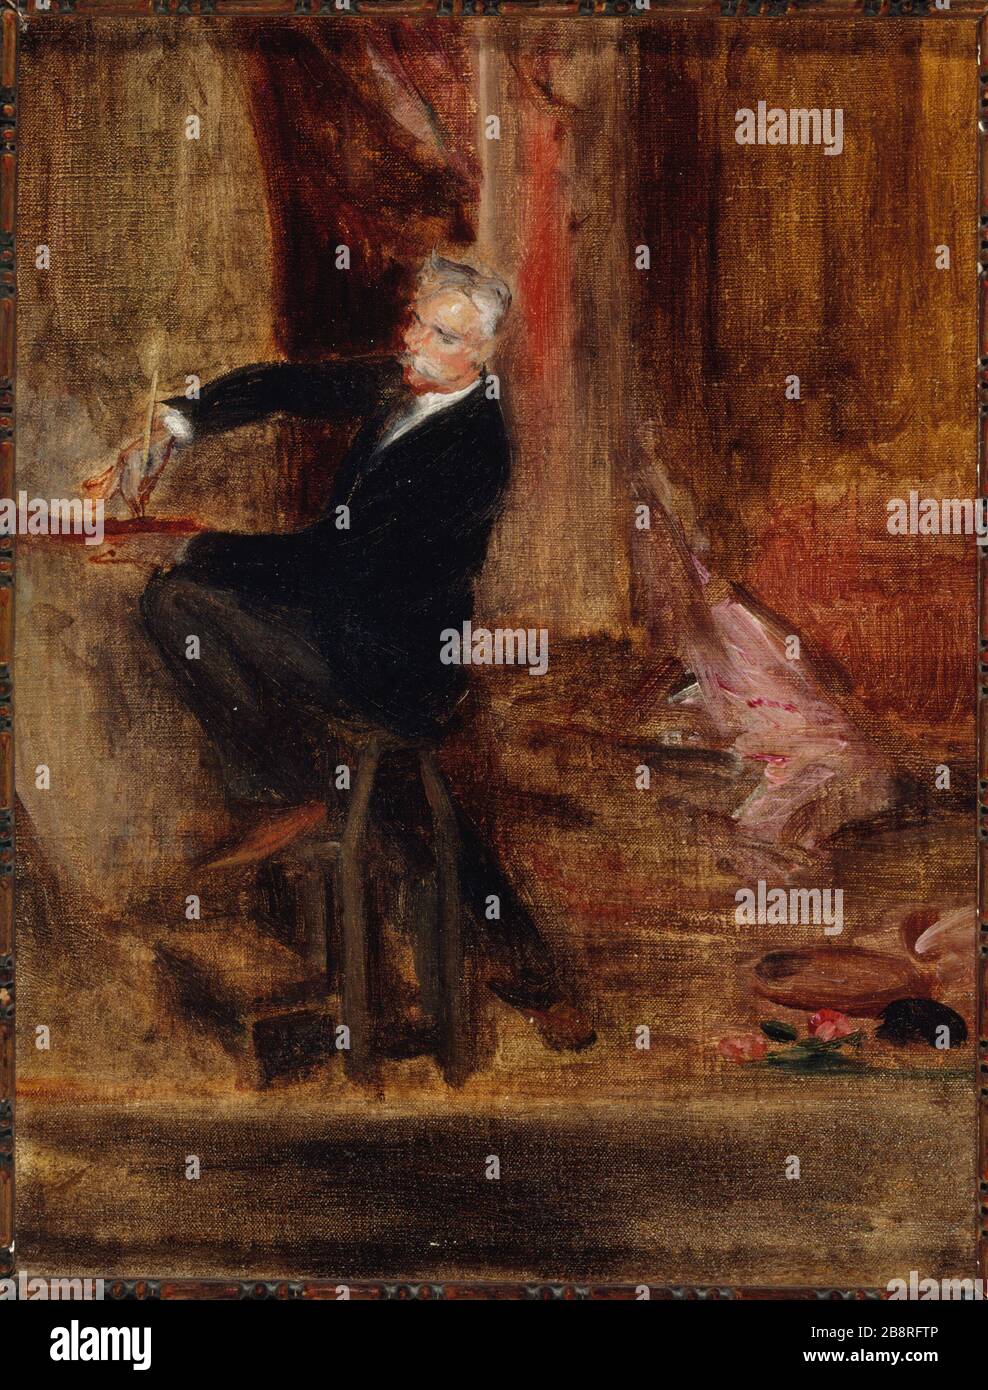 JULES CHERET DANS SON STUDIO (CONTOUR) Jacques-Émile Blanche (1861-1942). 'Jules Chéret (1836-1933) sans fils atelier (esquisse)'. Huile sur étoile. Paris, musée Carnavalet. Banque D'Images